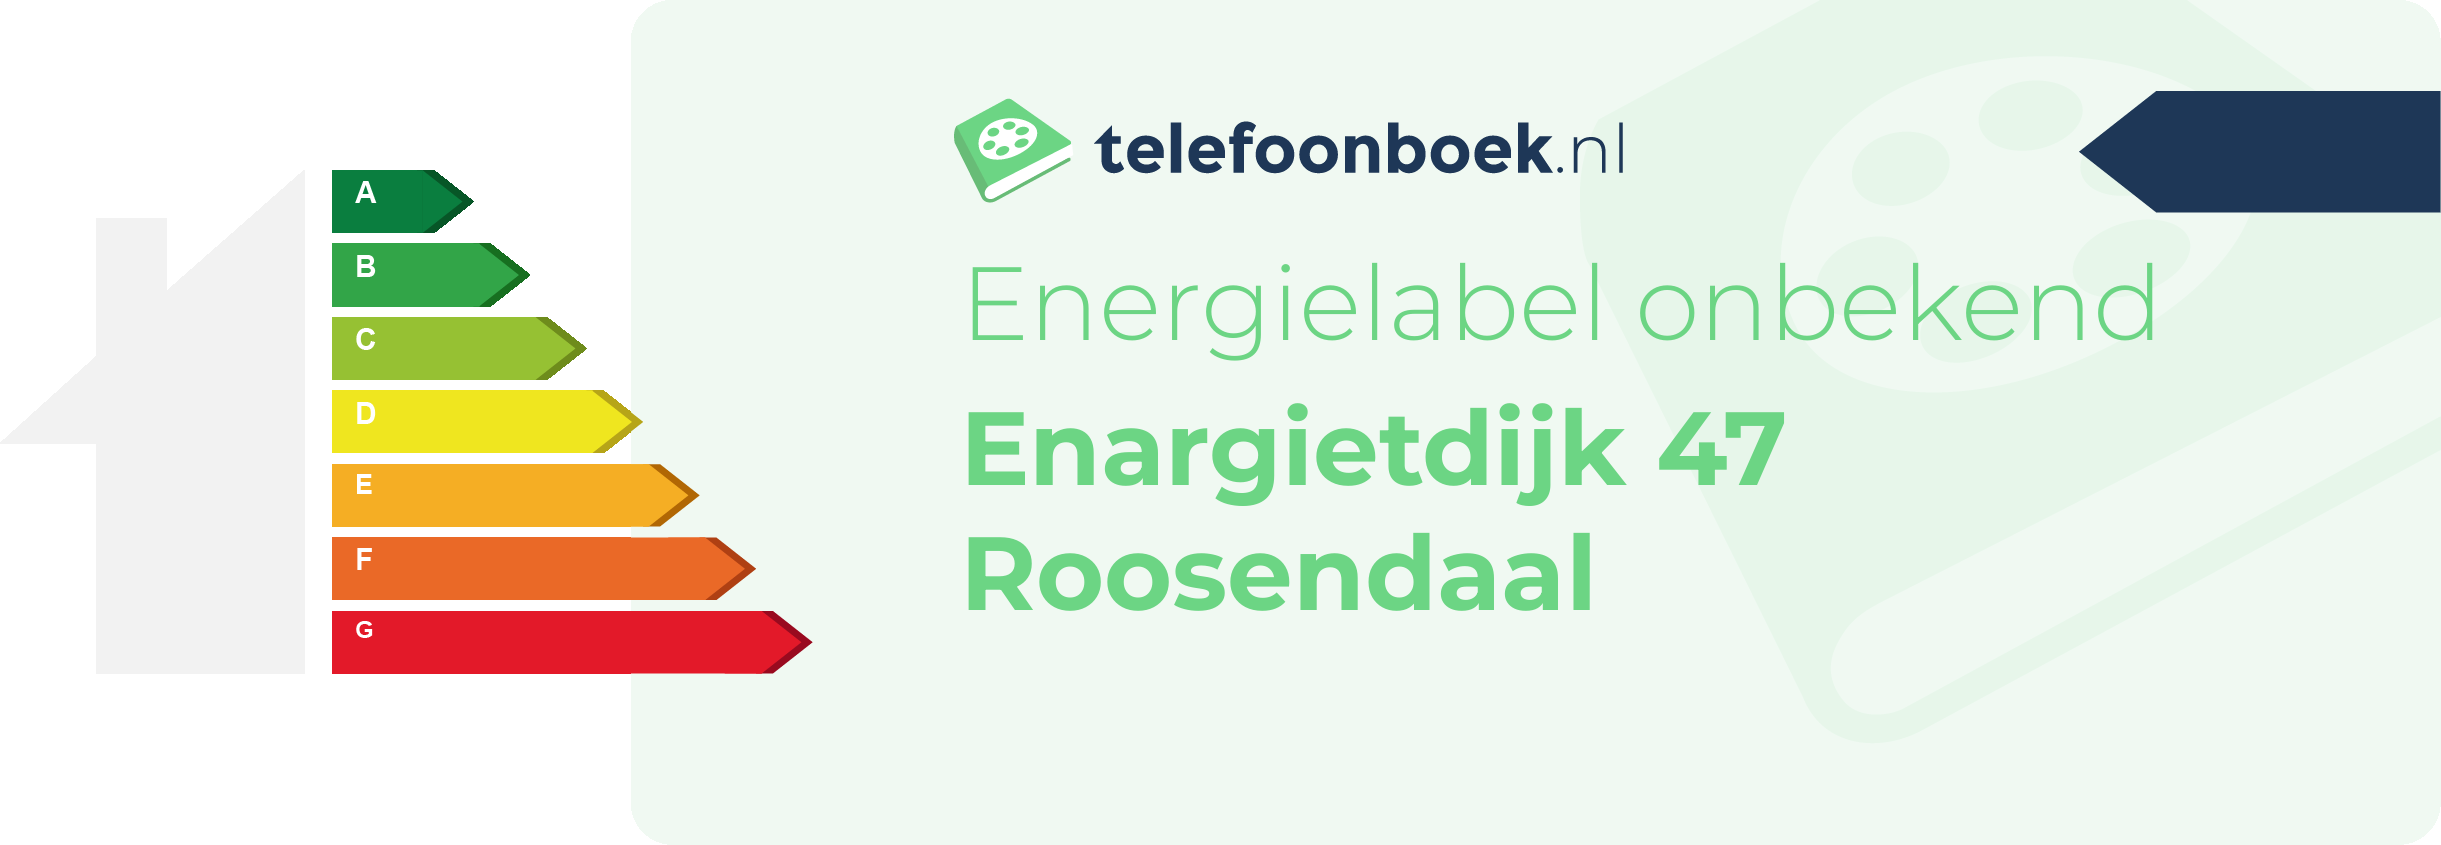 Energielabel Enargietdijk 47 Roosendaal